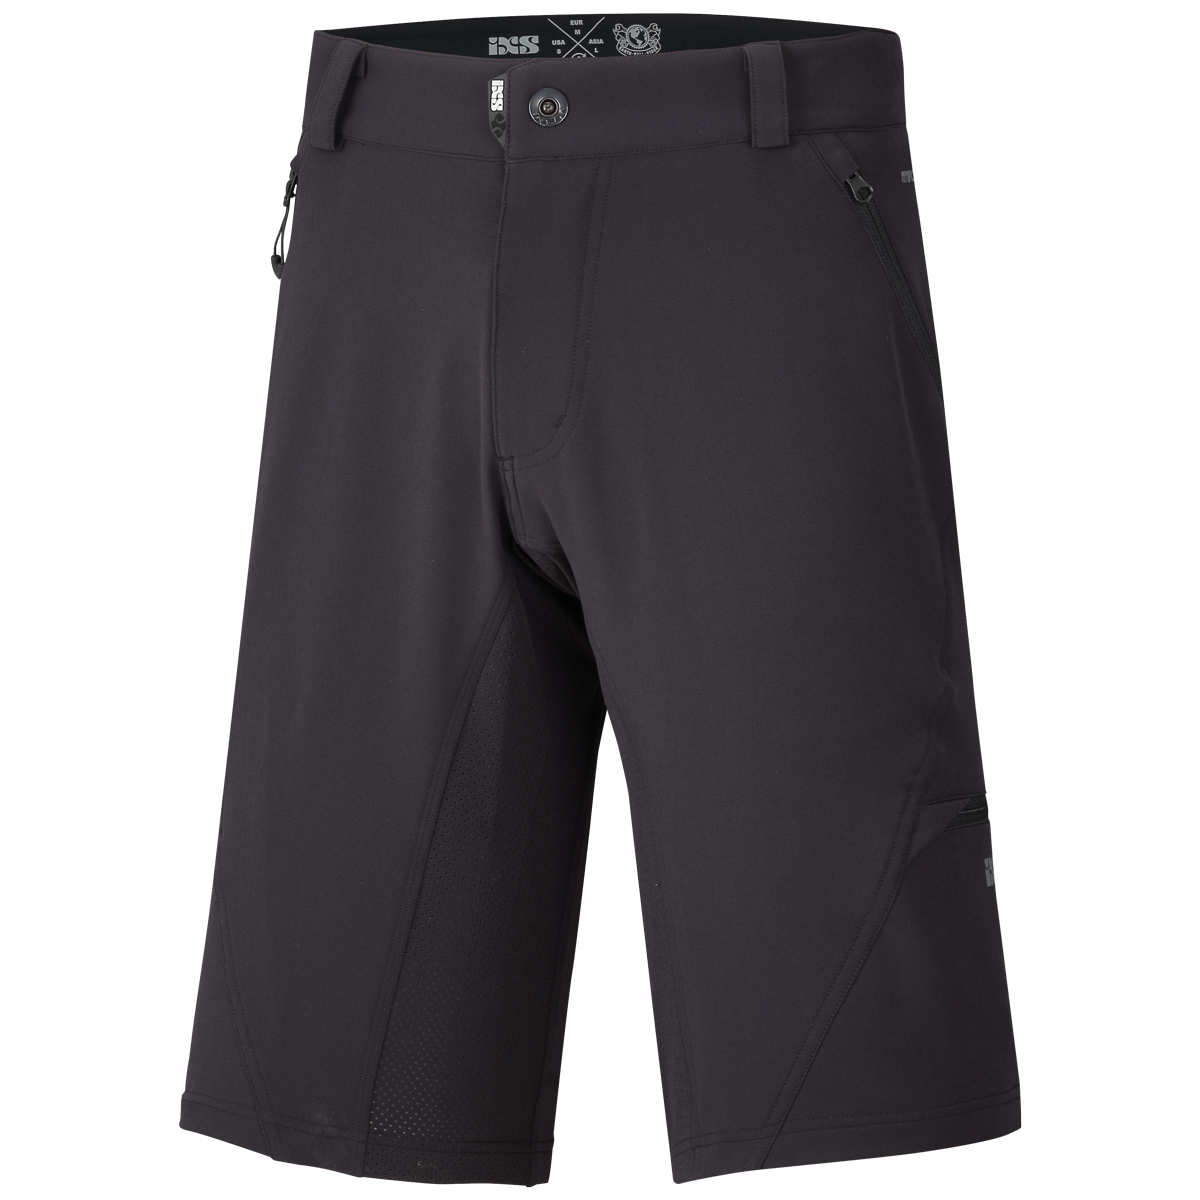 Carve Digger shorts black | Bottoms | MTB Apparel | MTB | iXS Official Shop